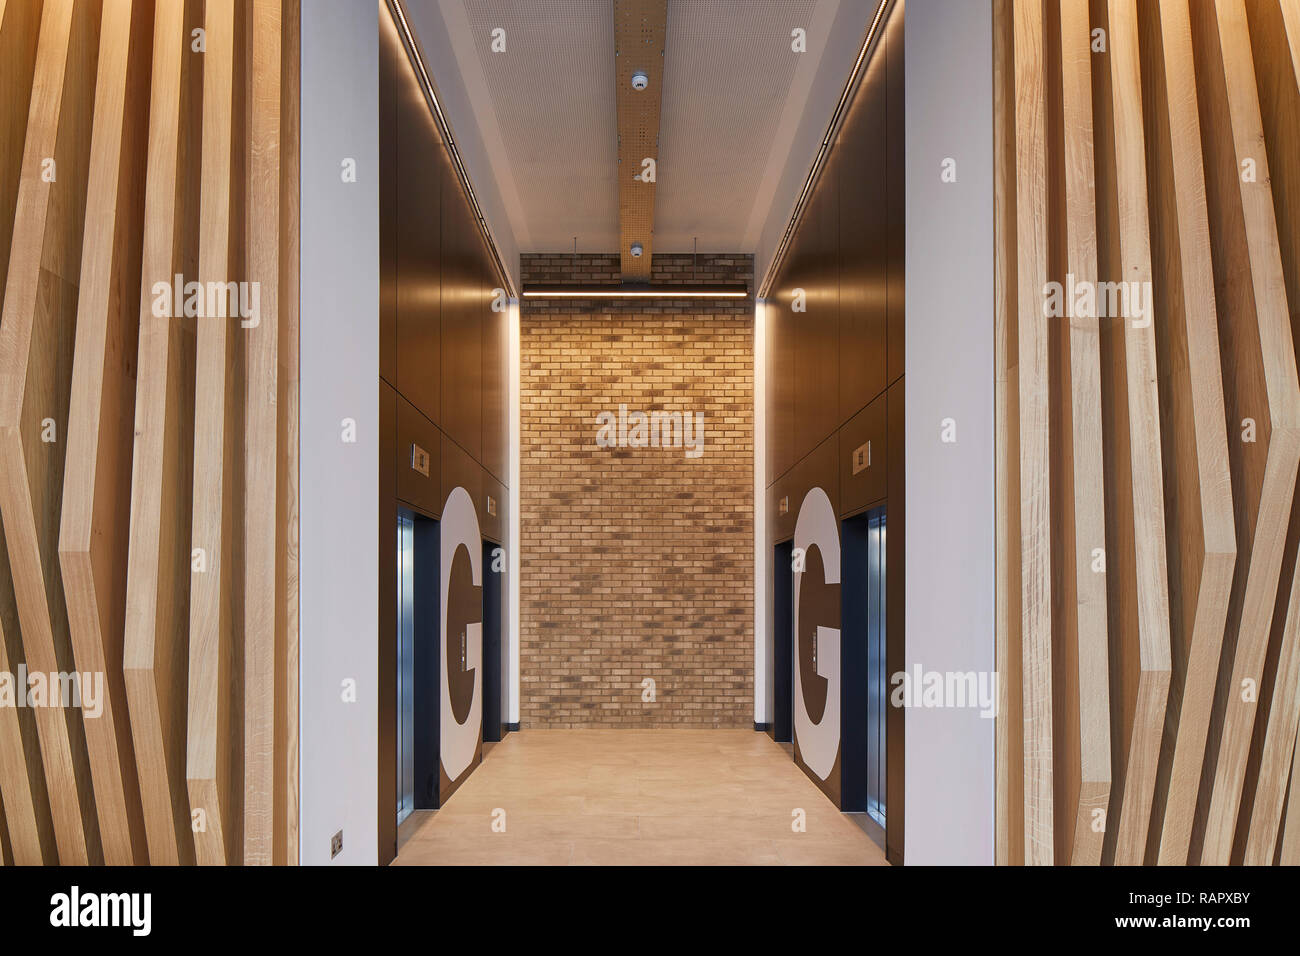 Aufzug Lobby. Der Portier Gebäude, Slough, Vereinigtes Königreich. Architekt: T P Bennett, 2017. Stockfoto